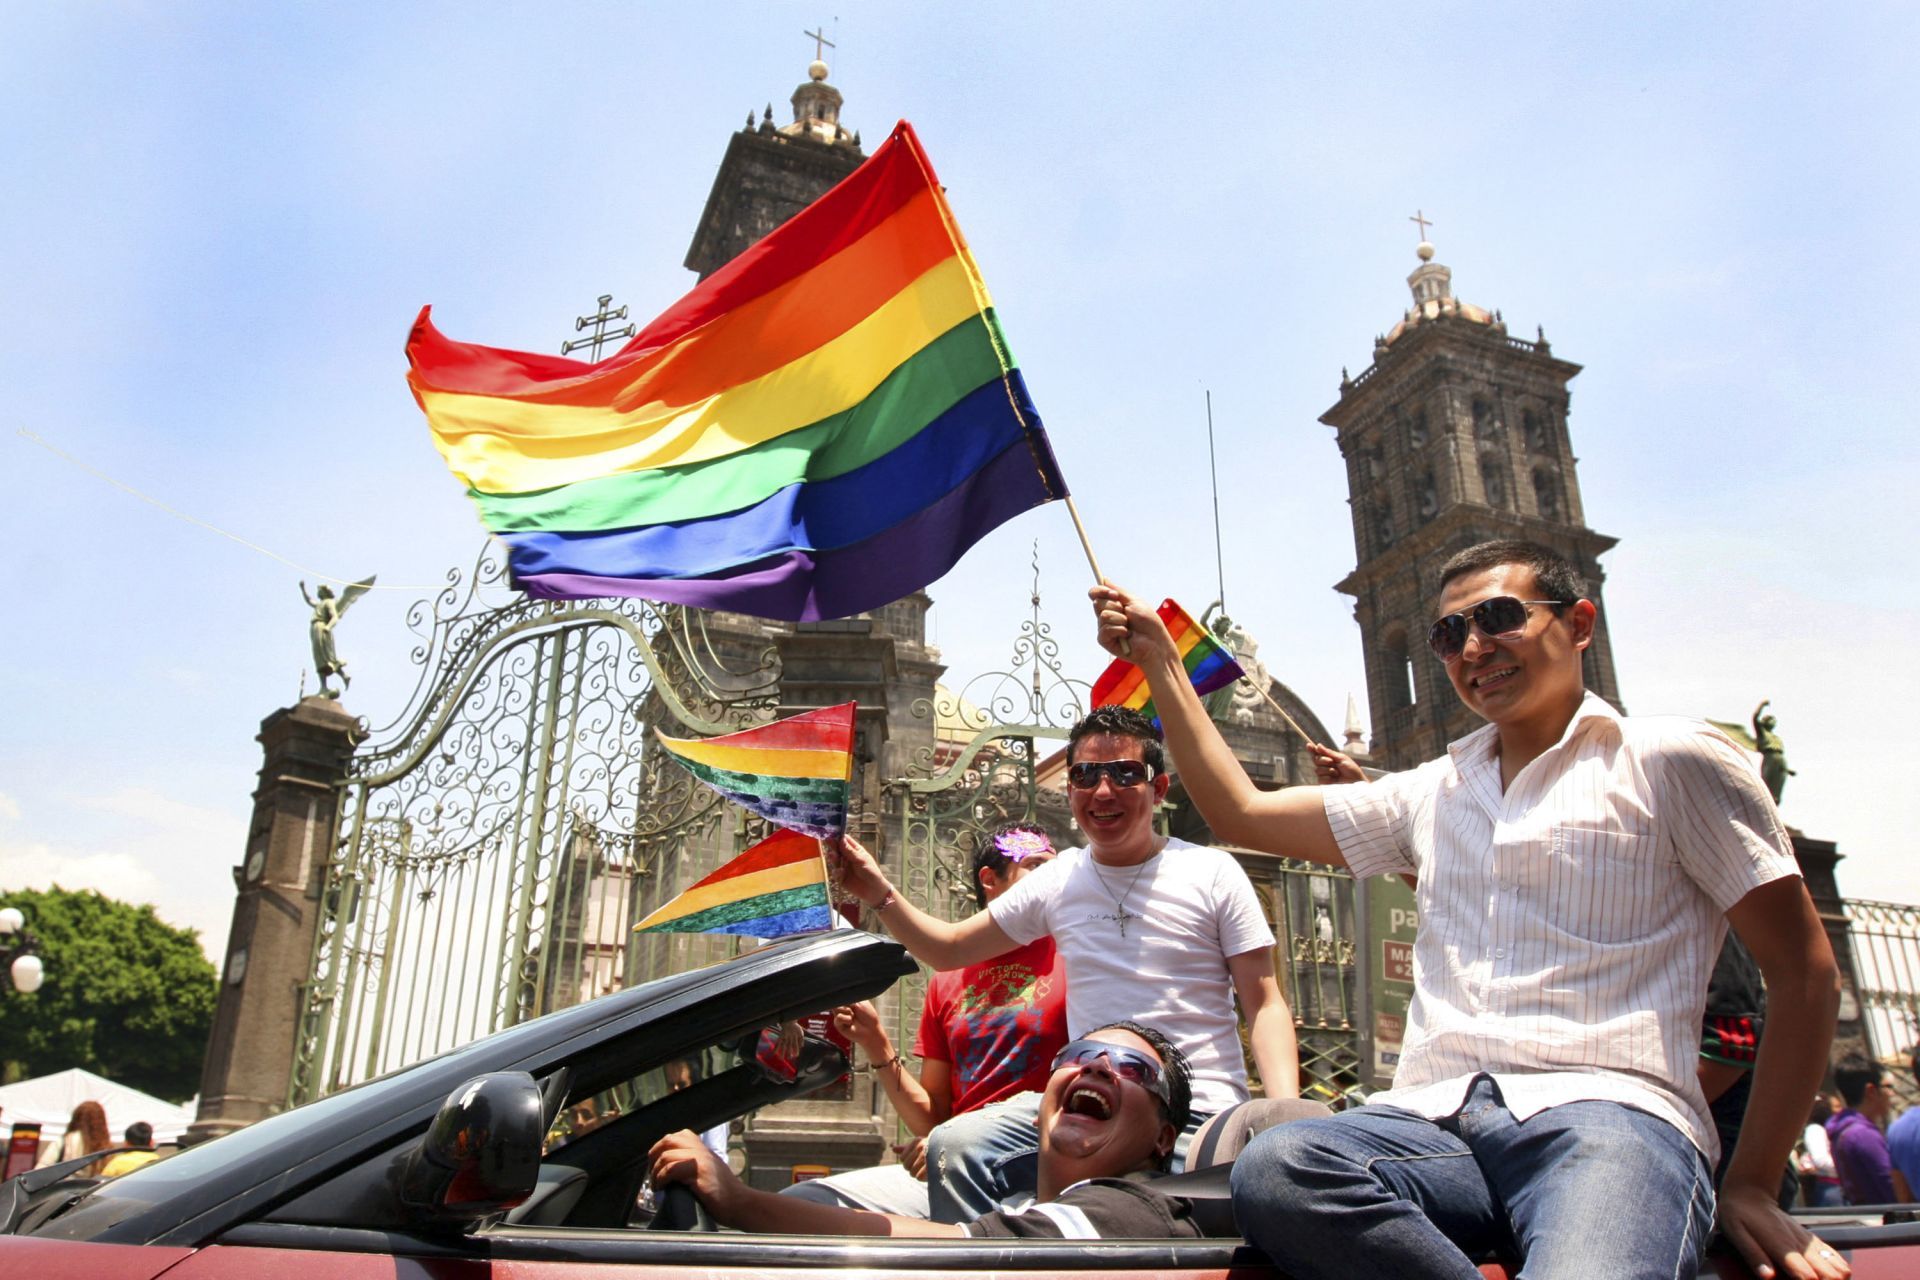 Terapias de conversión sexual ya son un delito en Puebla